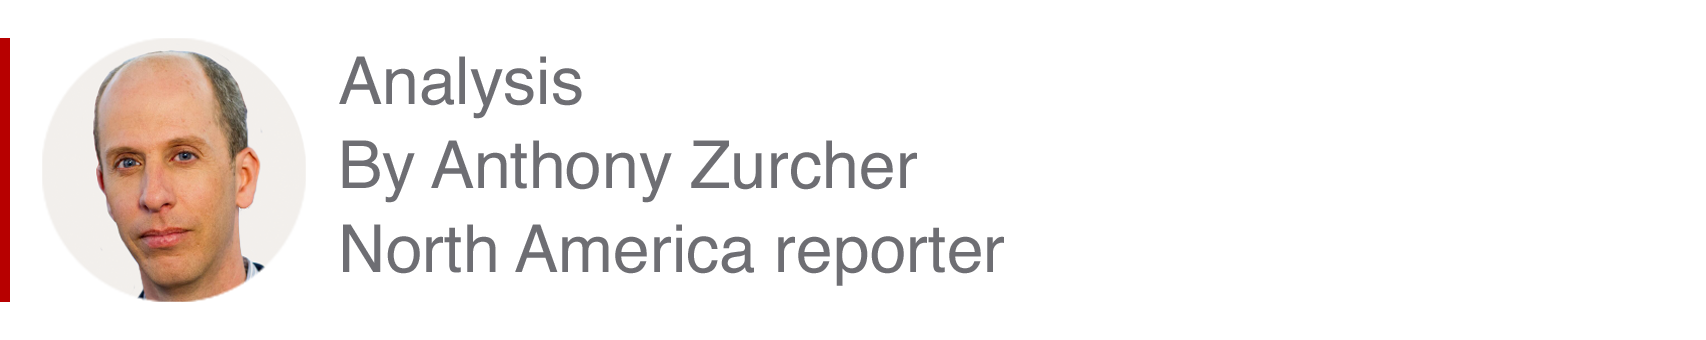 Anthony Zurcher